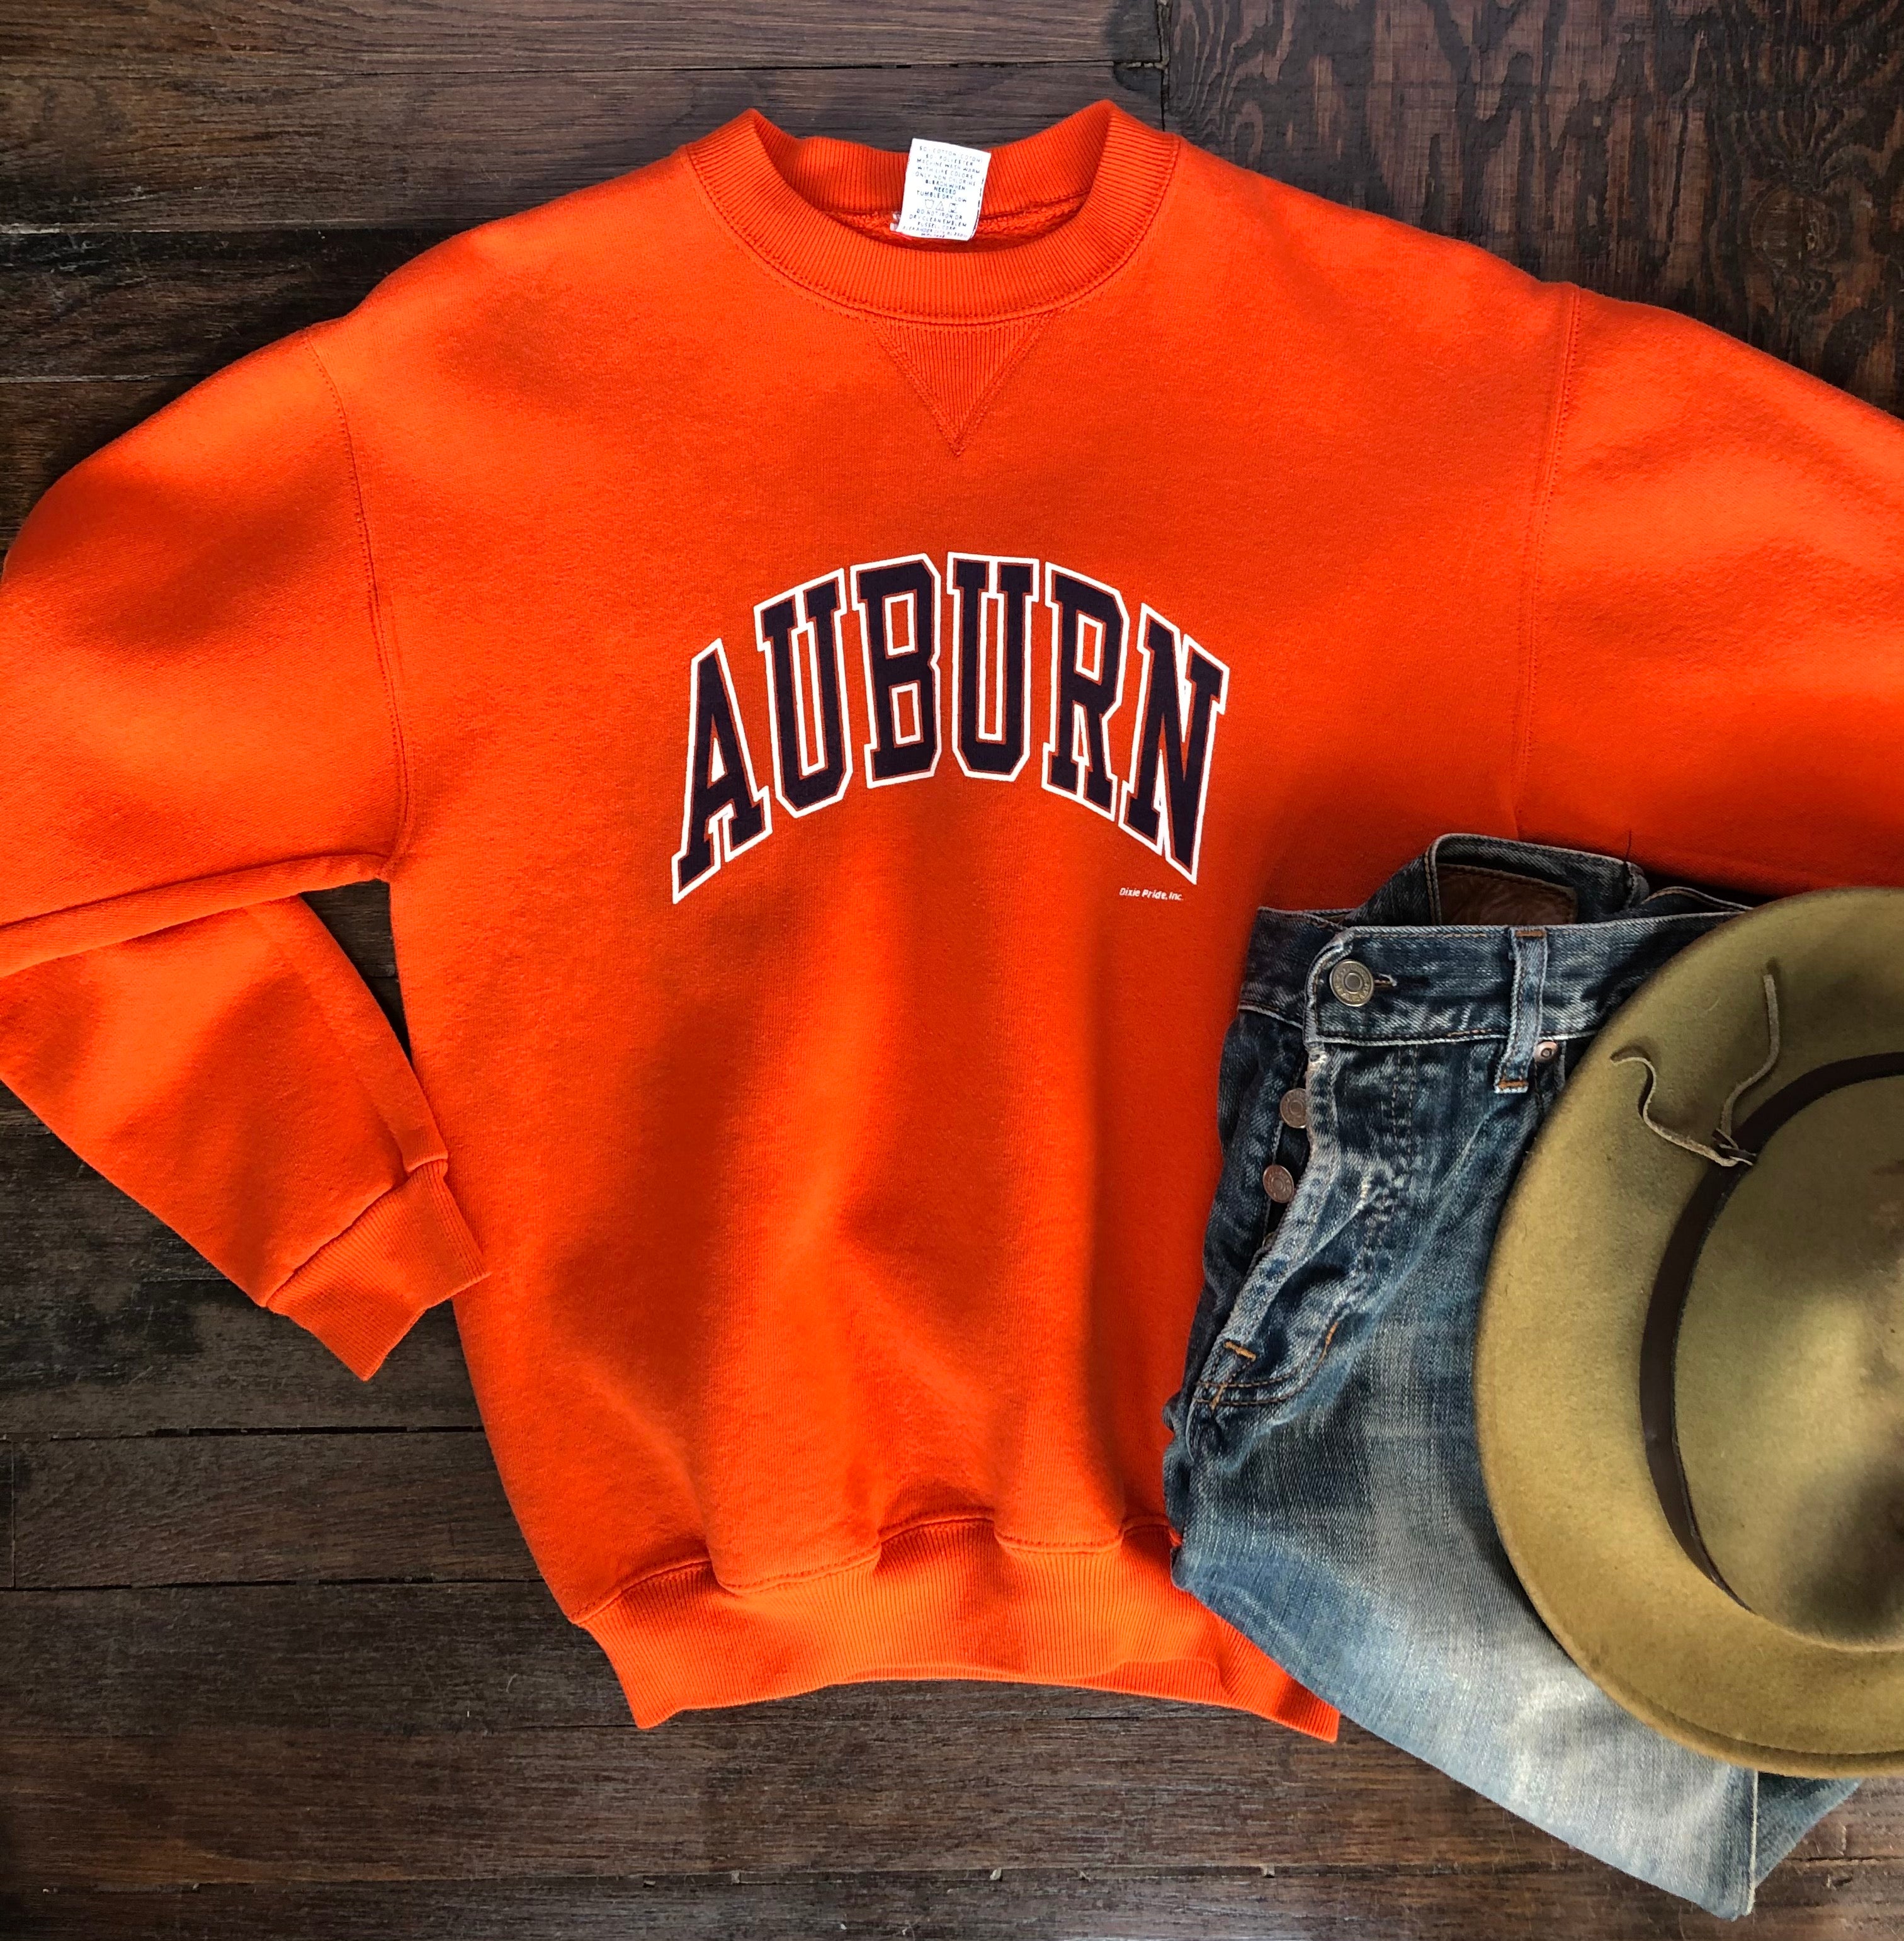 Vintage 70’s Auburn Russell Orange Sweatshirt